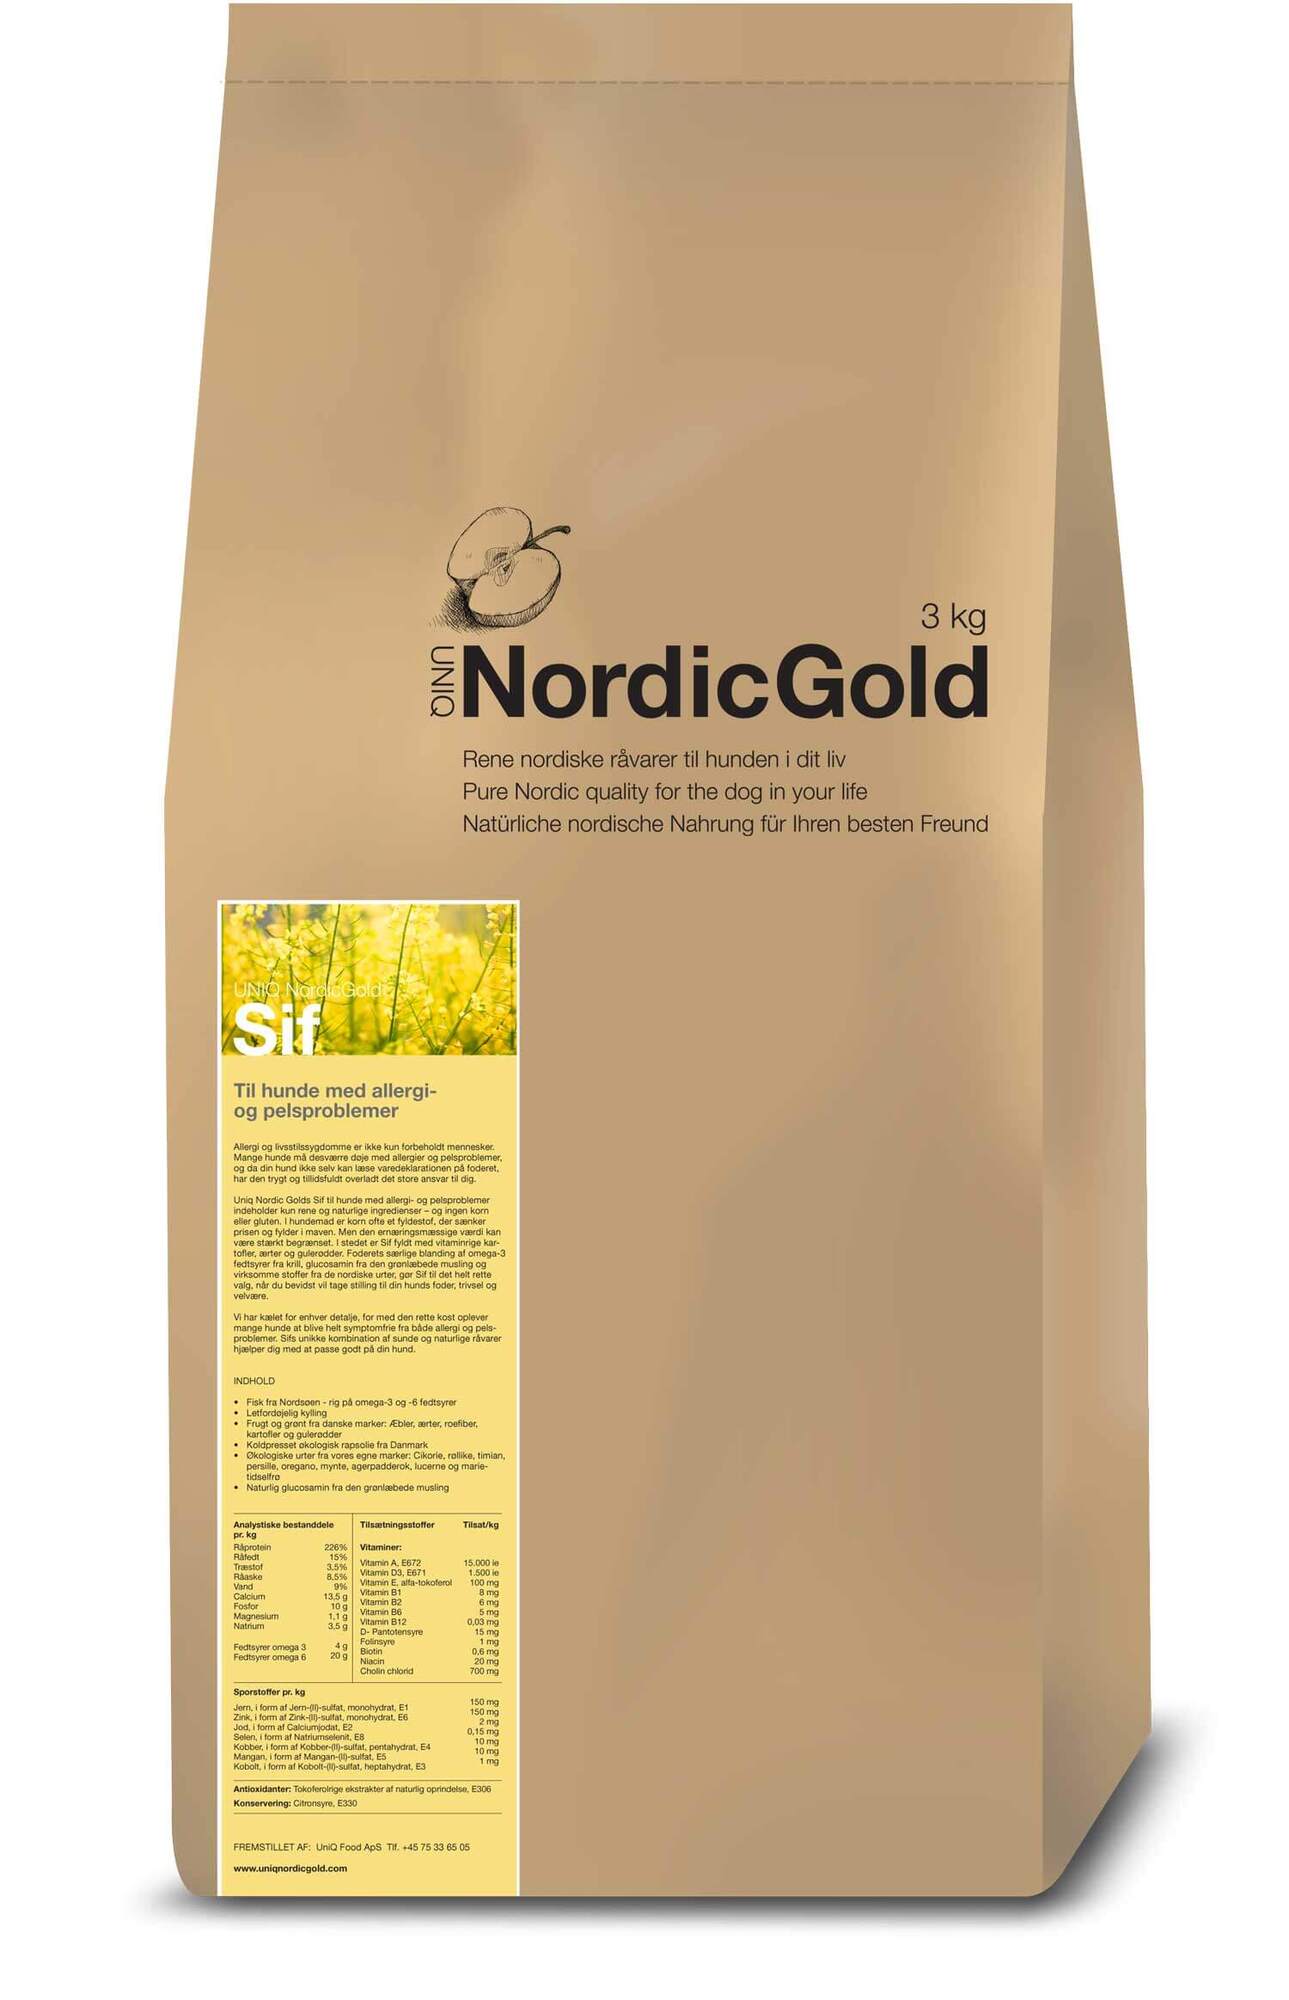 FRAGTSKADET - Nordic Gold Sif - fokus på følsom fordøjelse - ikke tilsat korn 10 kg - FRAGTSKADET, MEN INDHOLD HELT OK thumbnail